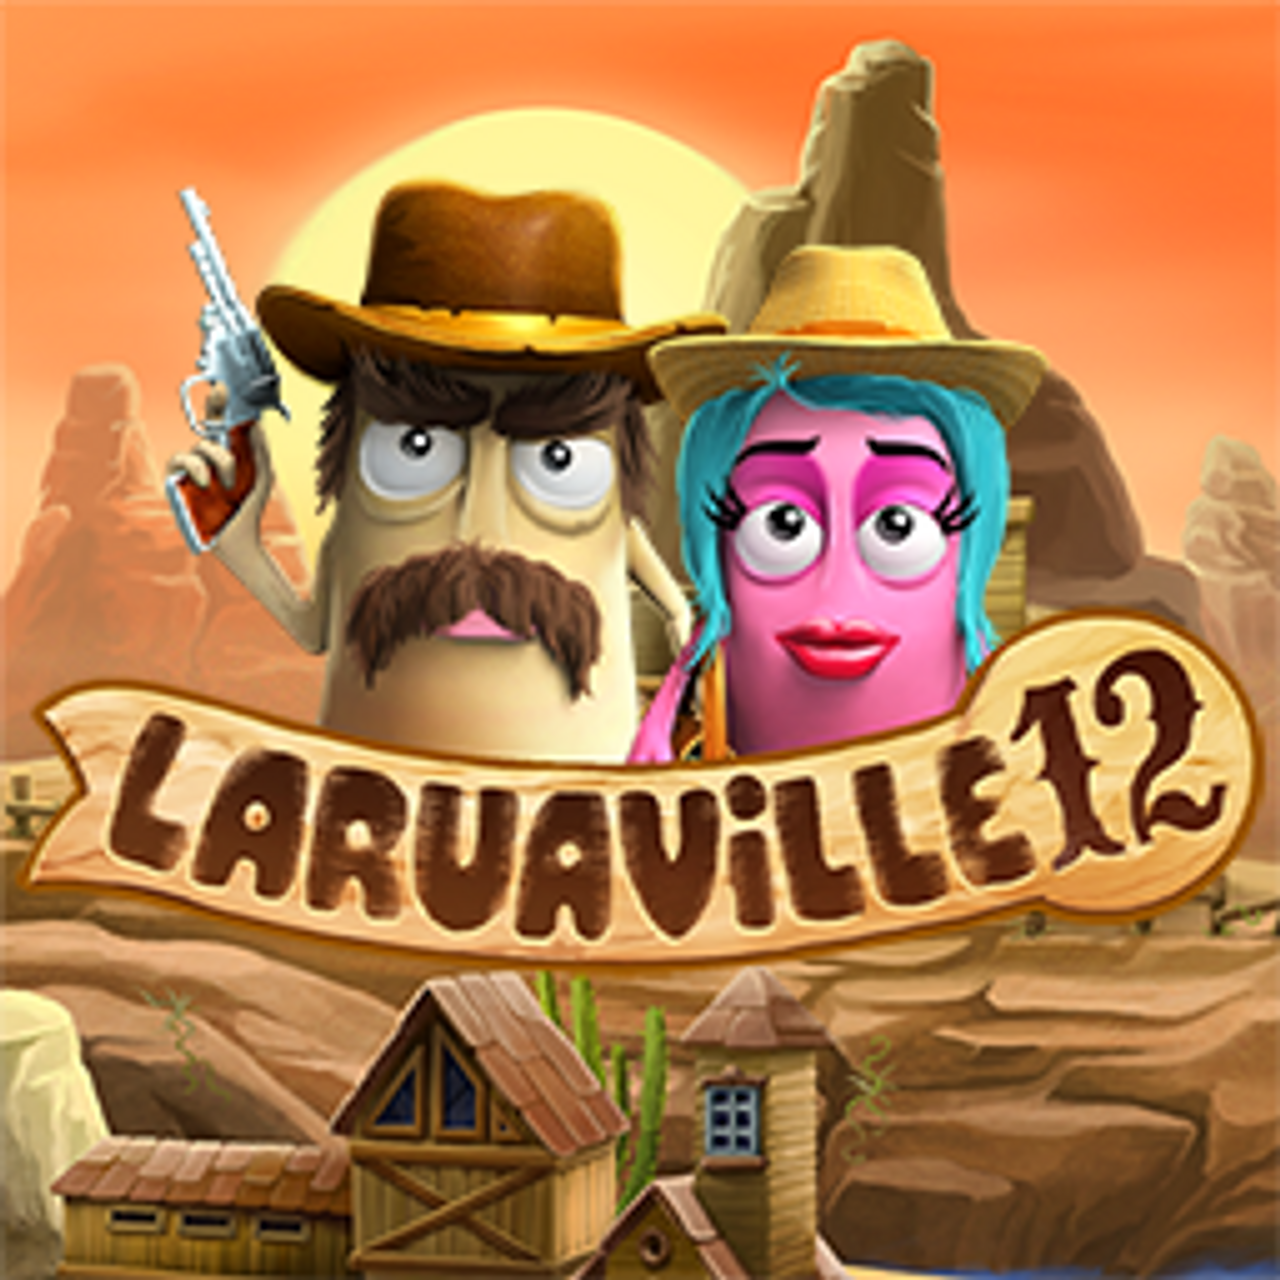 Laruaville 12